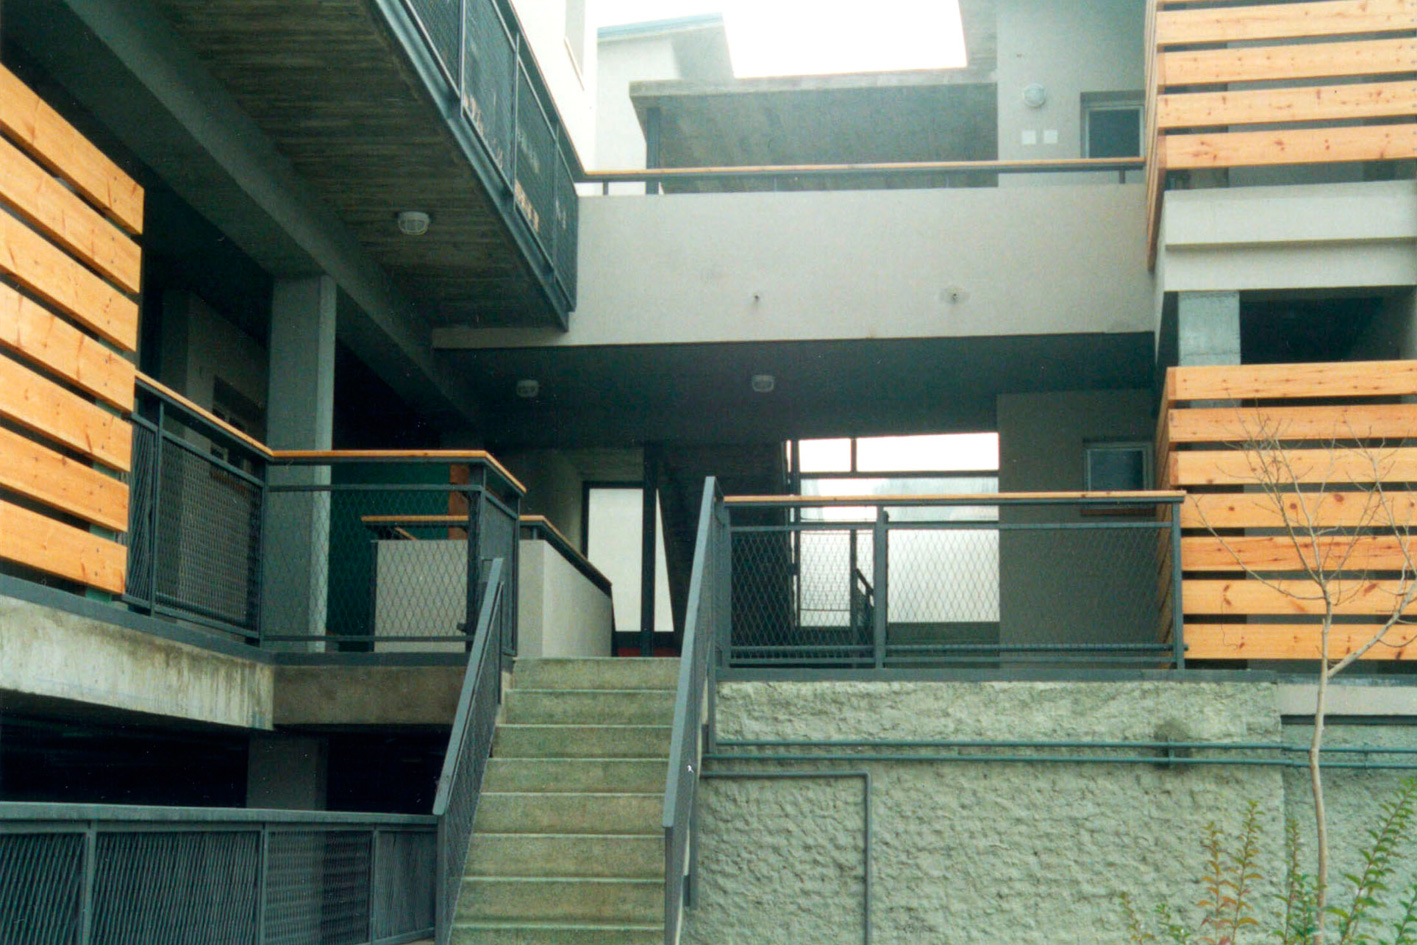 1989- 1993 Social housing in Vallecas, Madrid